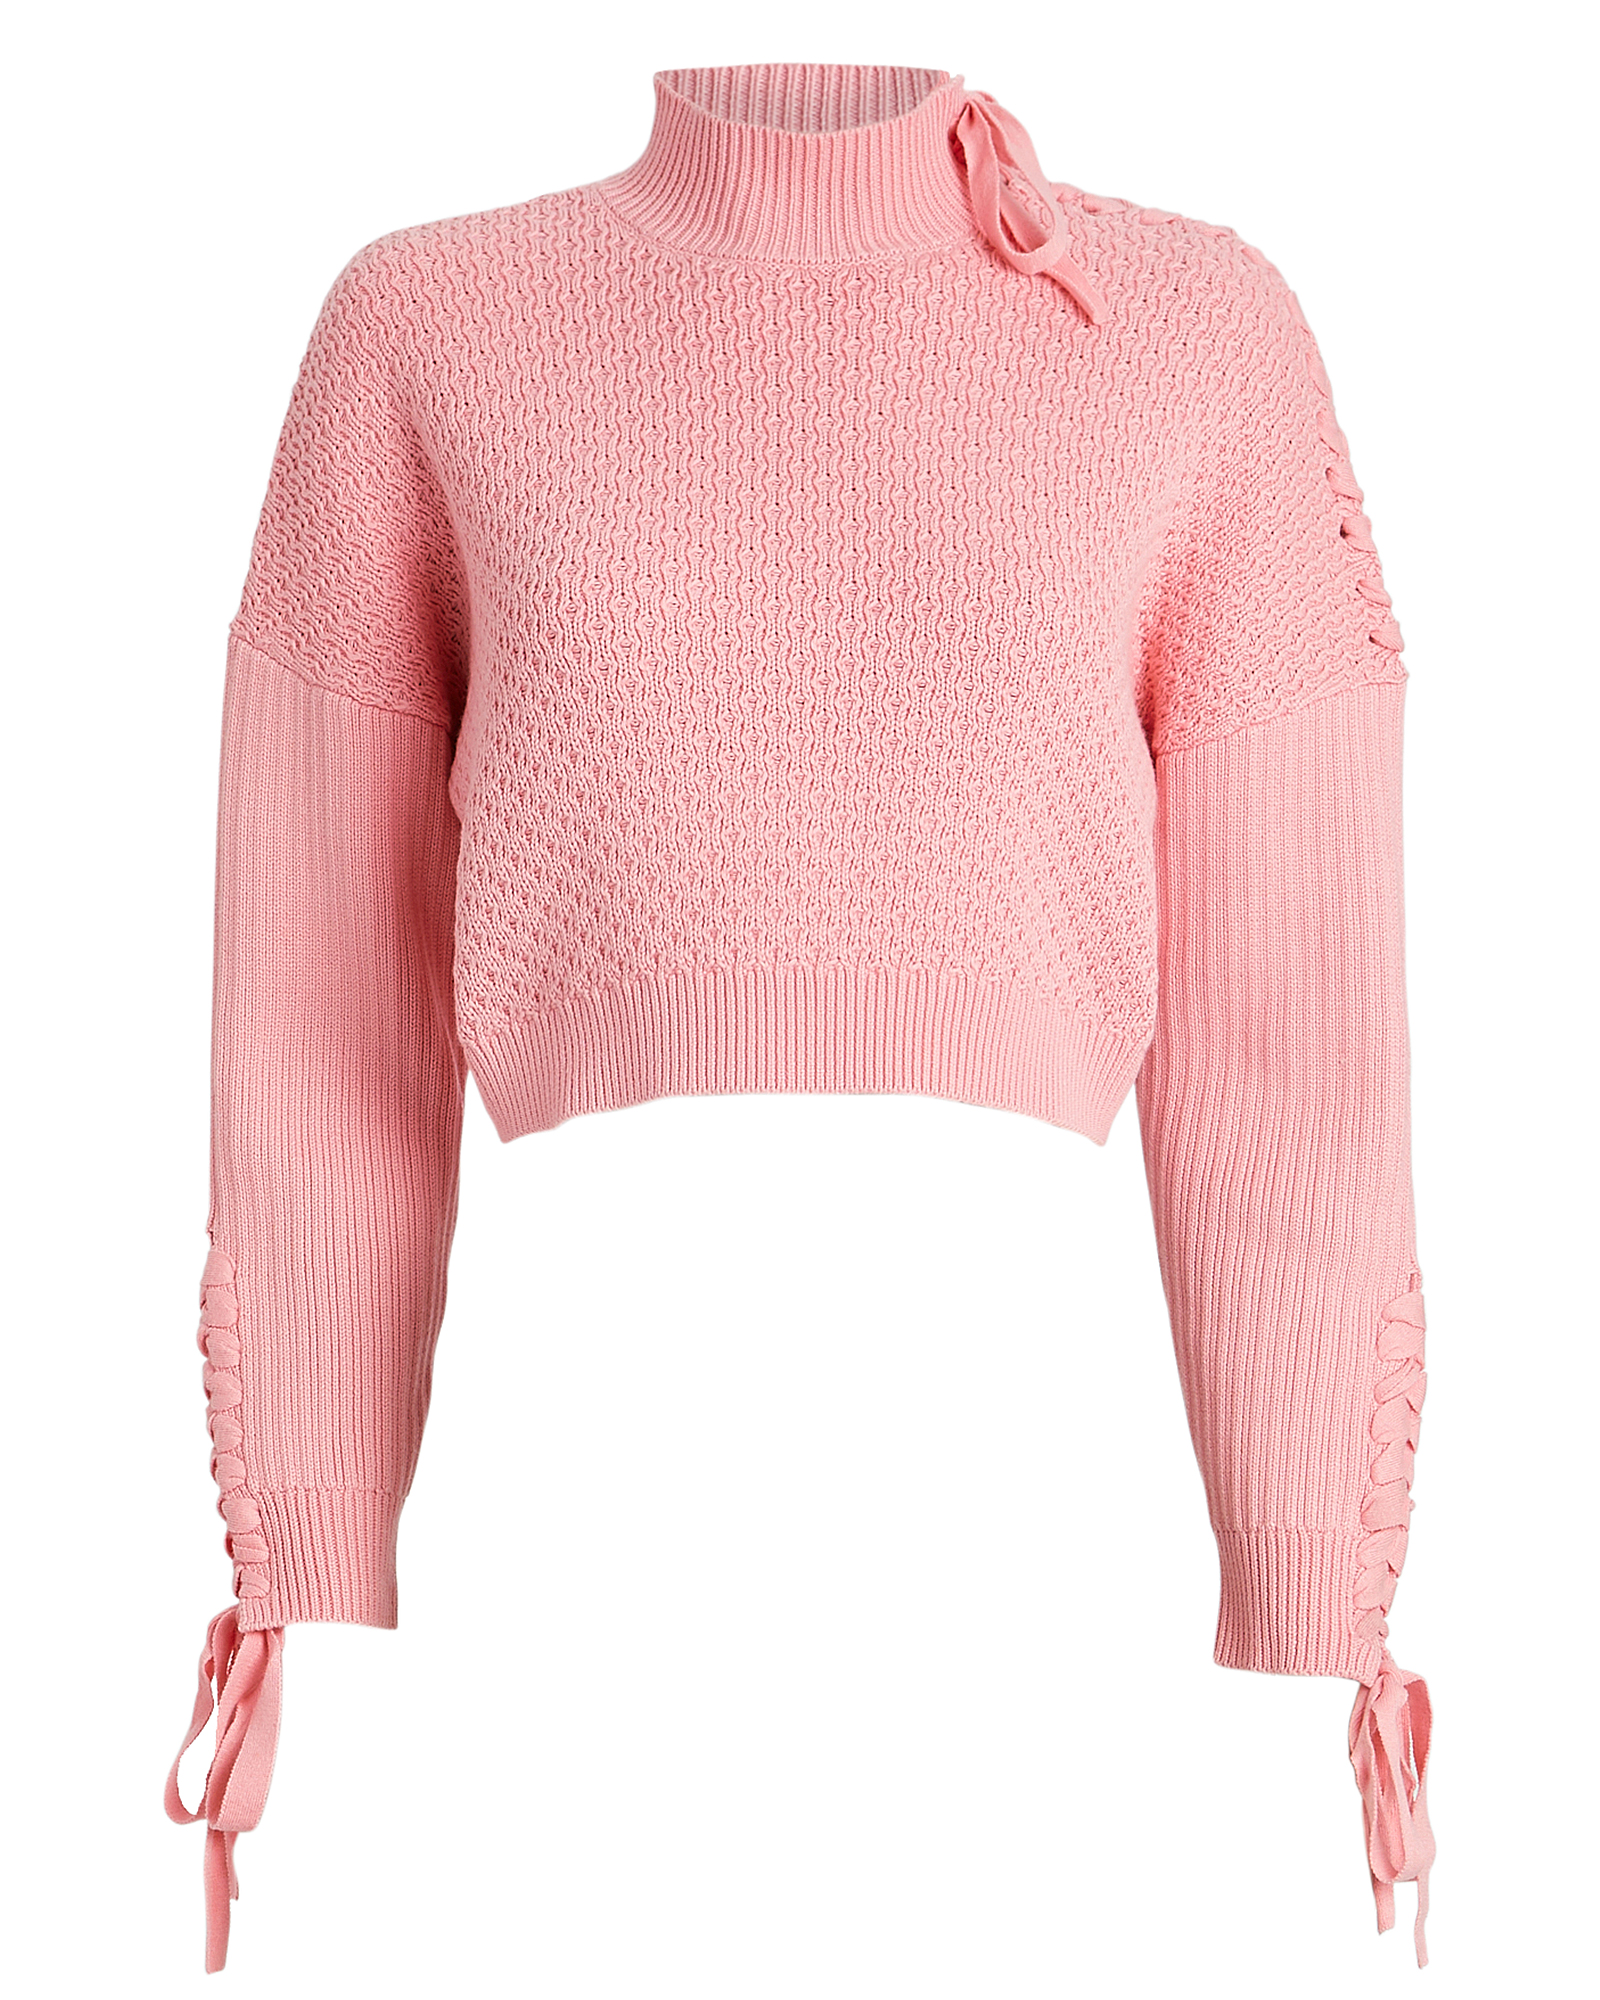 Jonathan Simkhai | Lace-Up Cable Knit Sweater | INTERMIX®